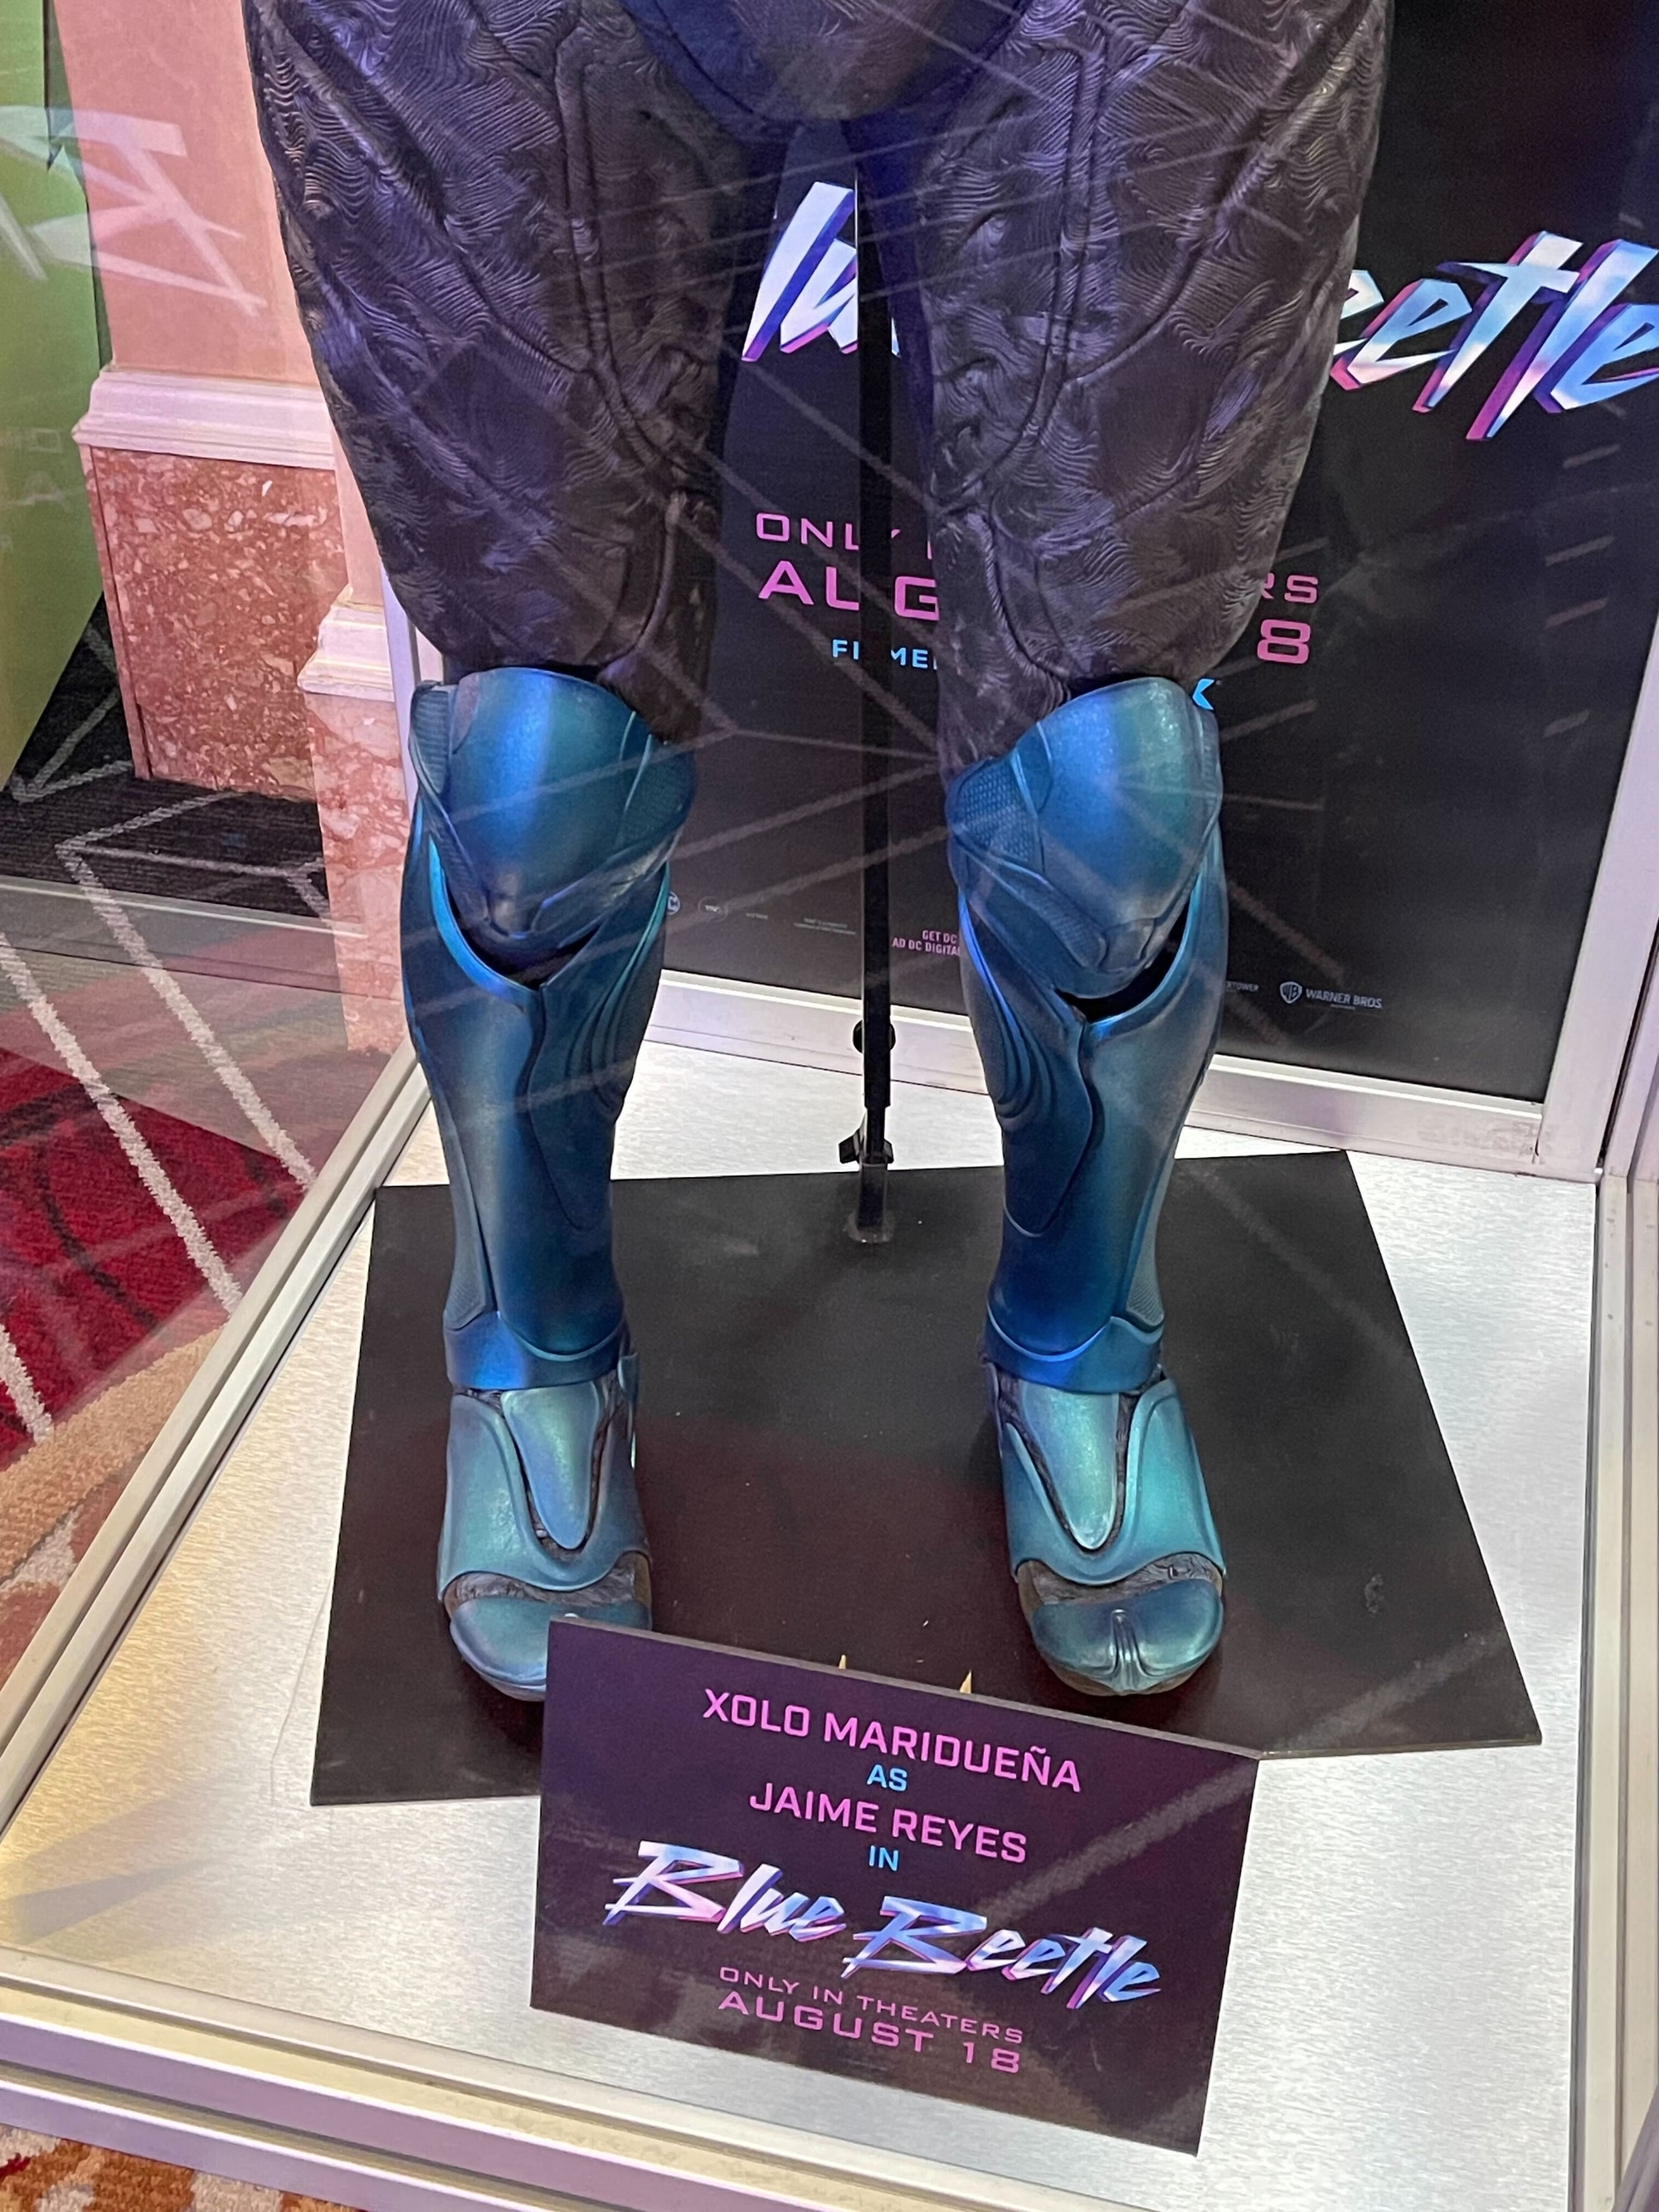 Ngắm nghía hình ảnh chi tiết đầu tiên về bộ giáp của siêu anh hùng Blue Beetle - Ảnh 8.